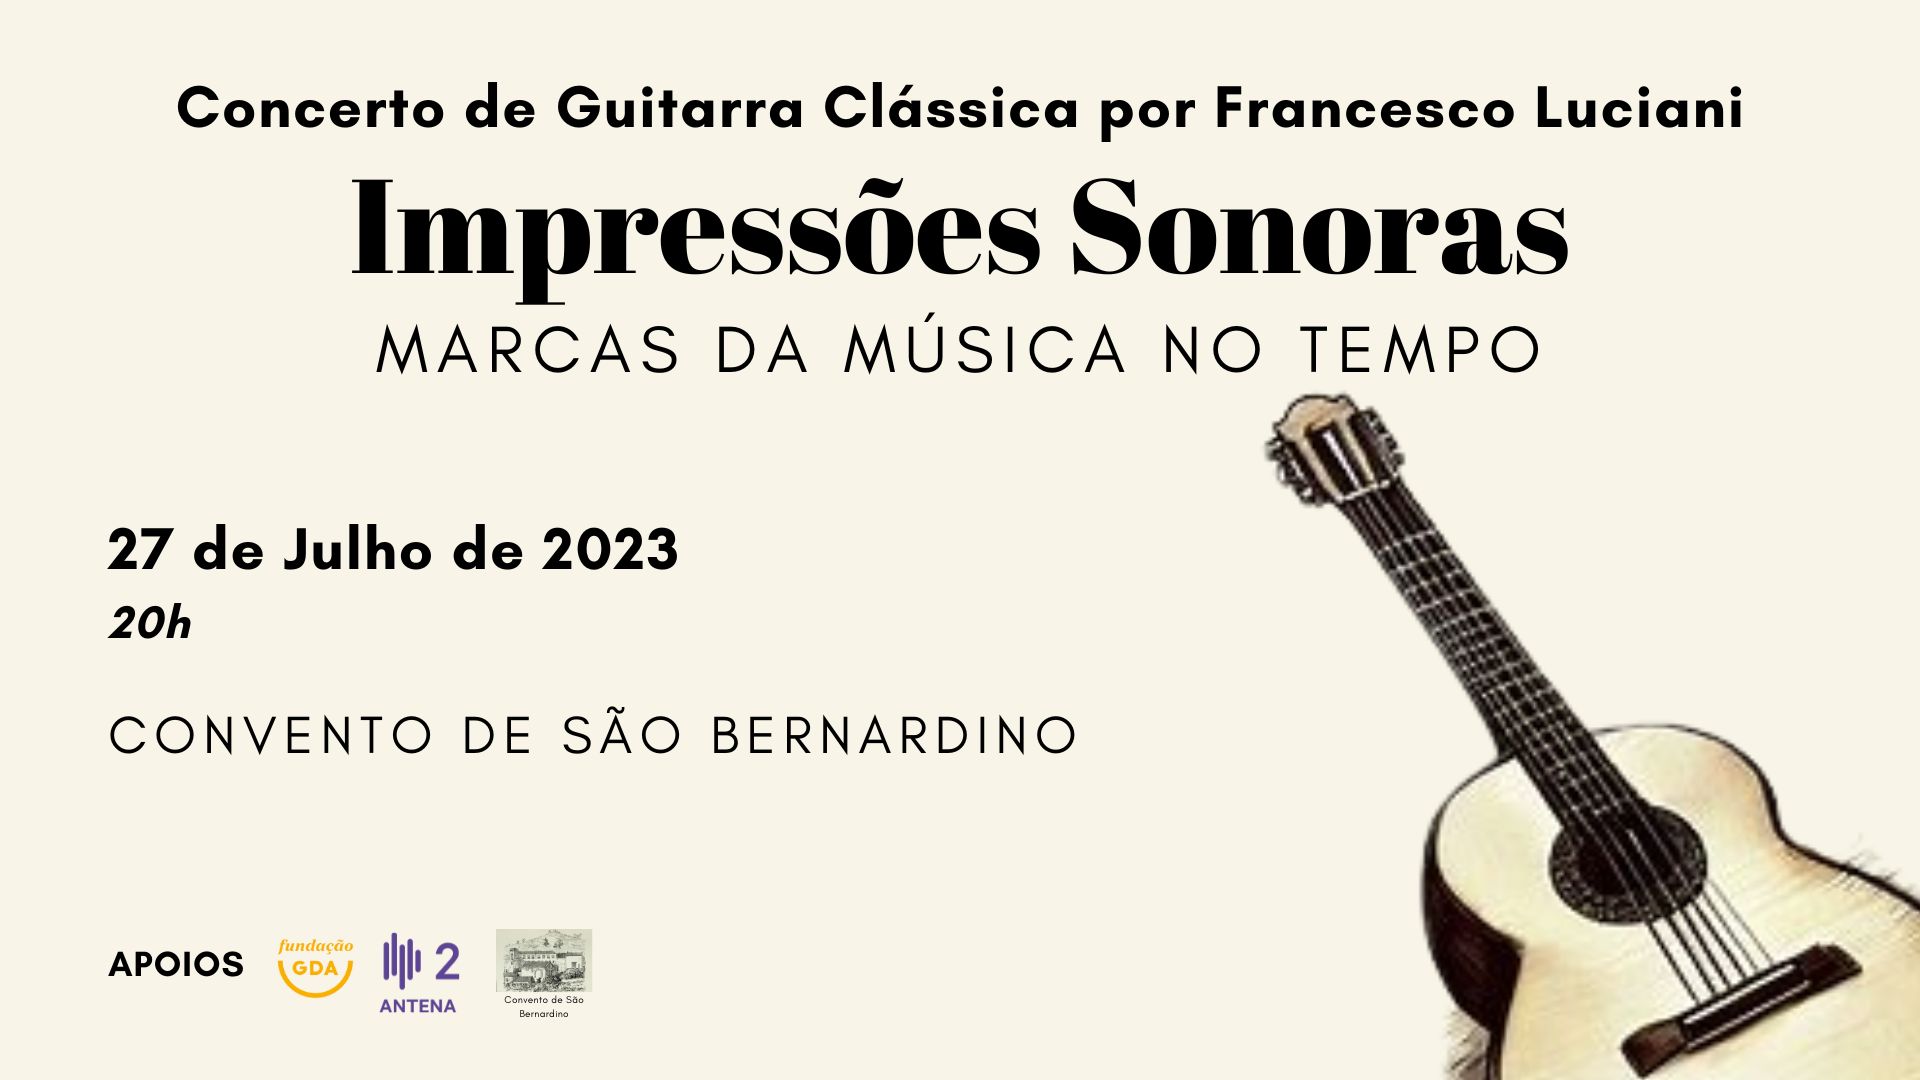 Concerto no Convento de São Bernardino (Câmara de Lobos, Madeira) - 27 de Julho de 2023 - Francesco Luciani